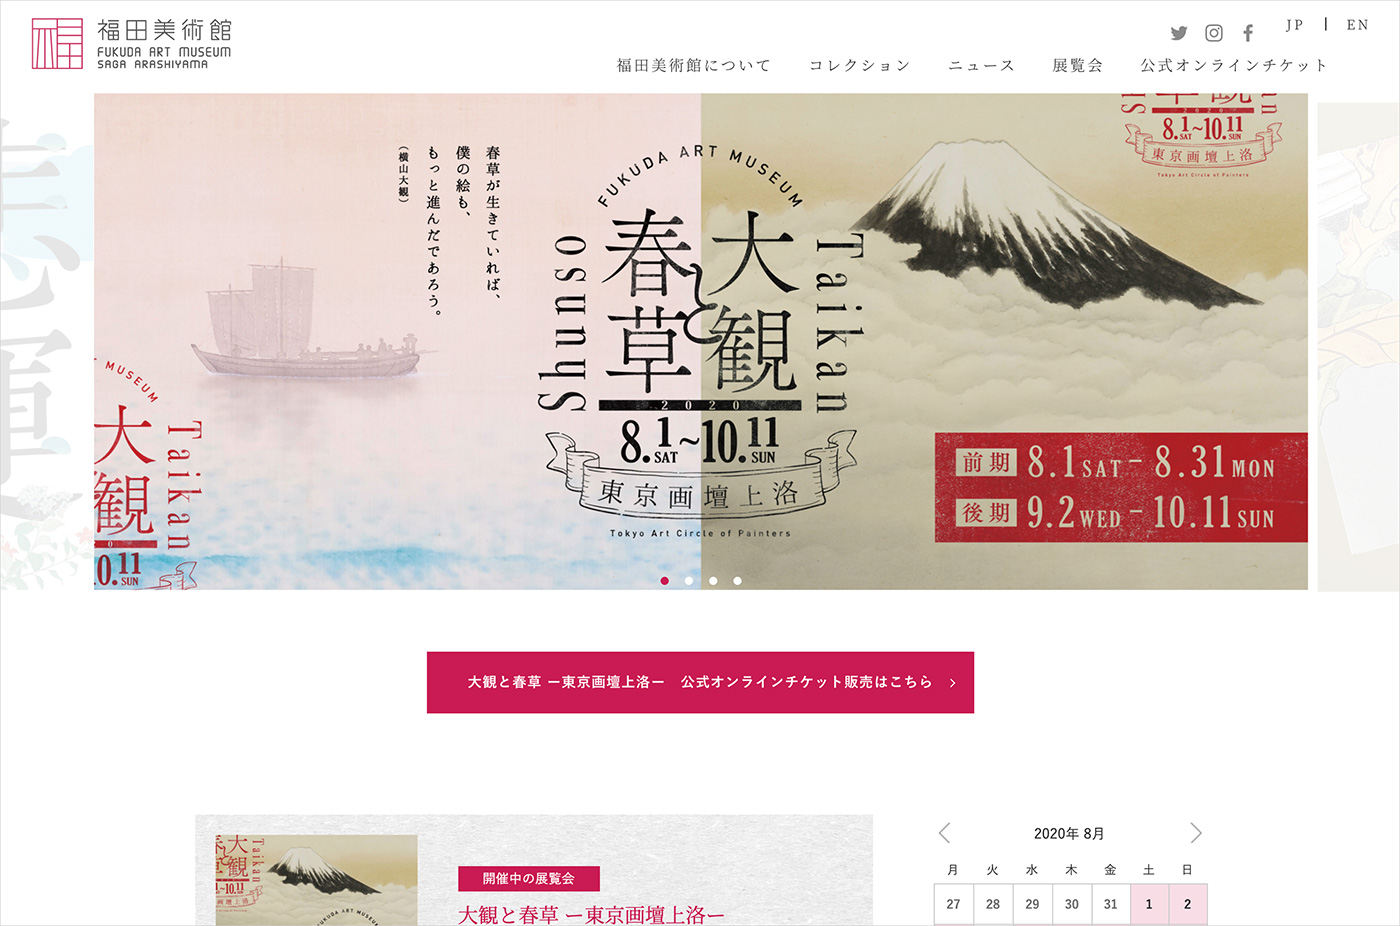 京都・嵯峨嵐山 福田美術館 -FUKUDA ART MUSEUM-ウェブサイトの画面キャプチャ画像